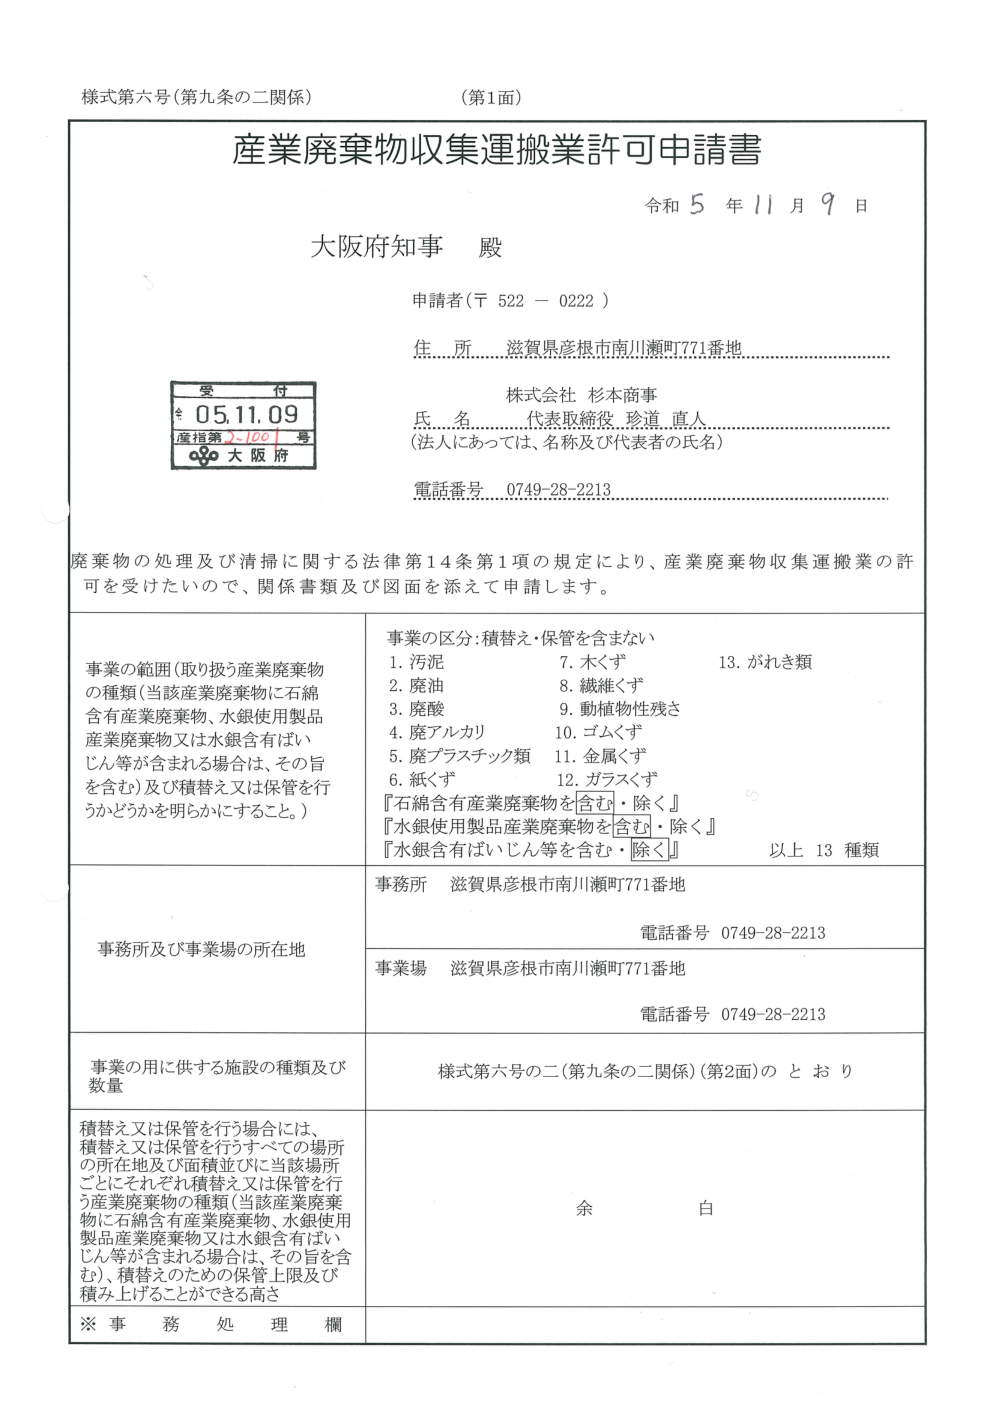 大阪府の産業廃棄物収集運搬業(更新)許可申請書を提出いたしました ※ご入用の際はこちらのページからダウンロードが可能です